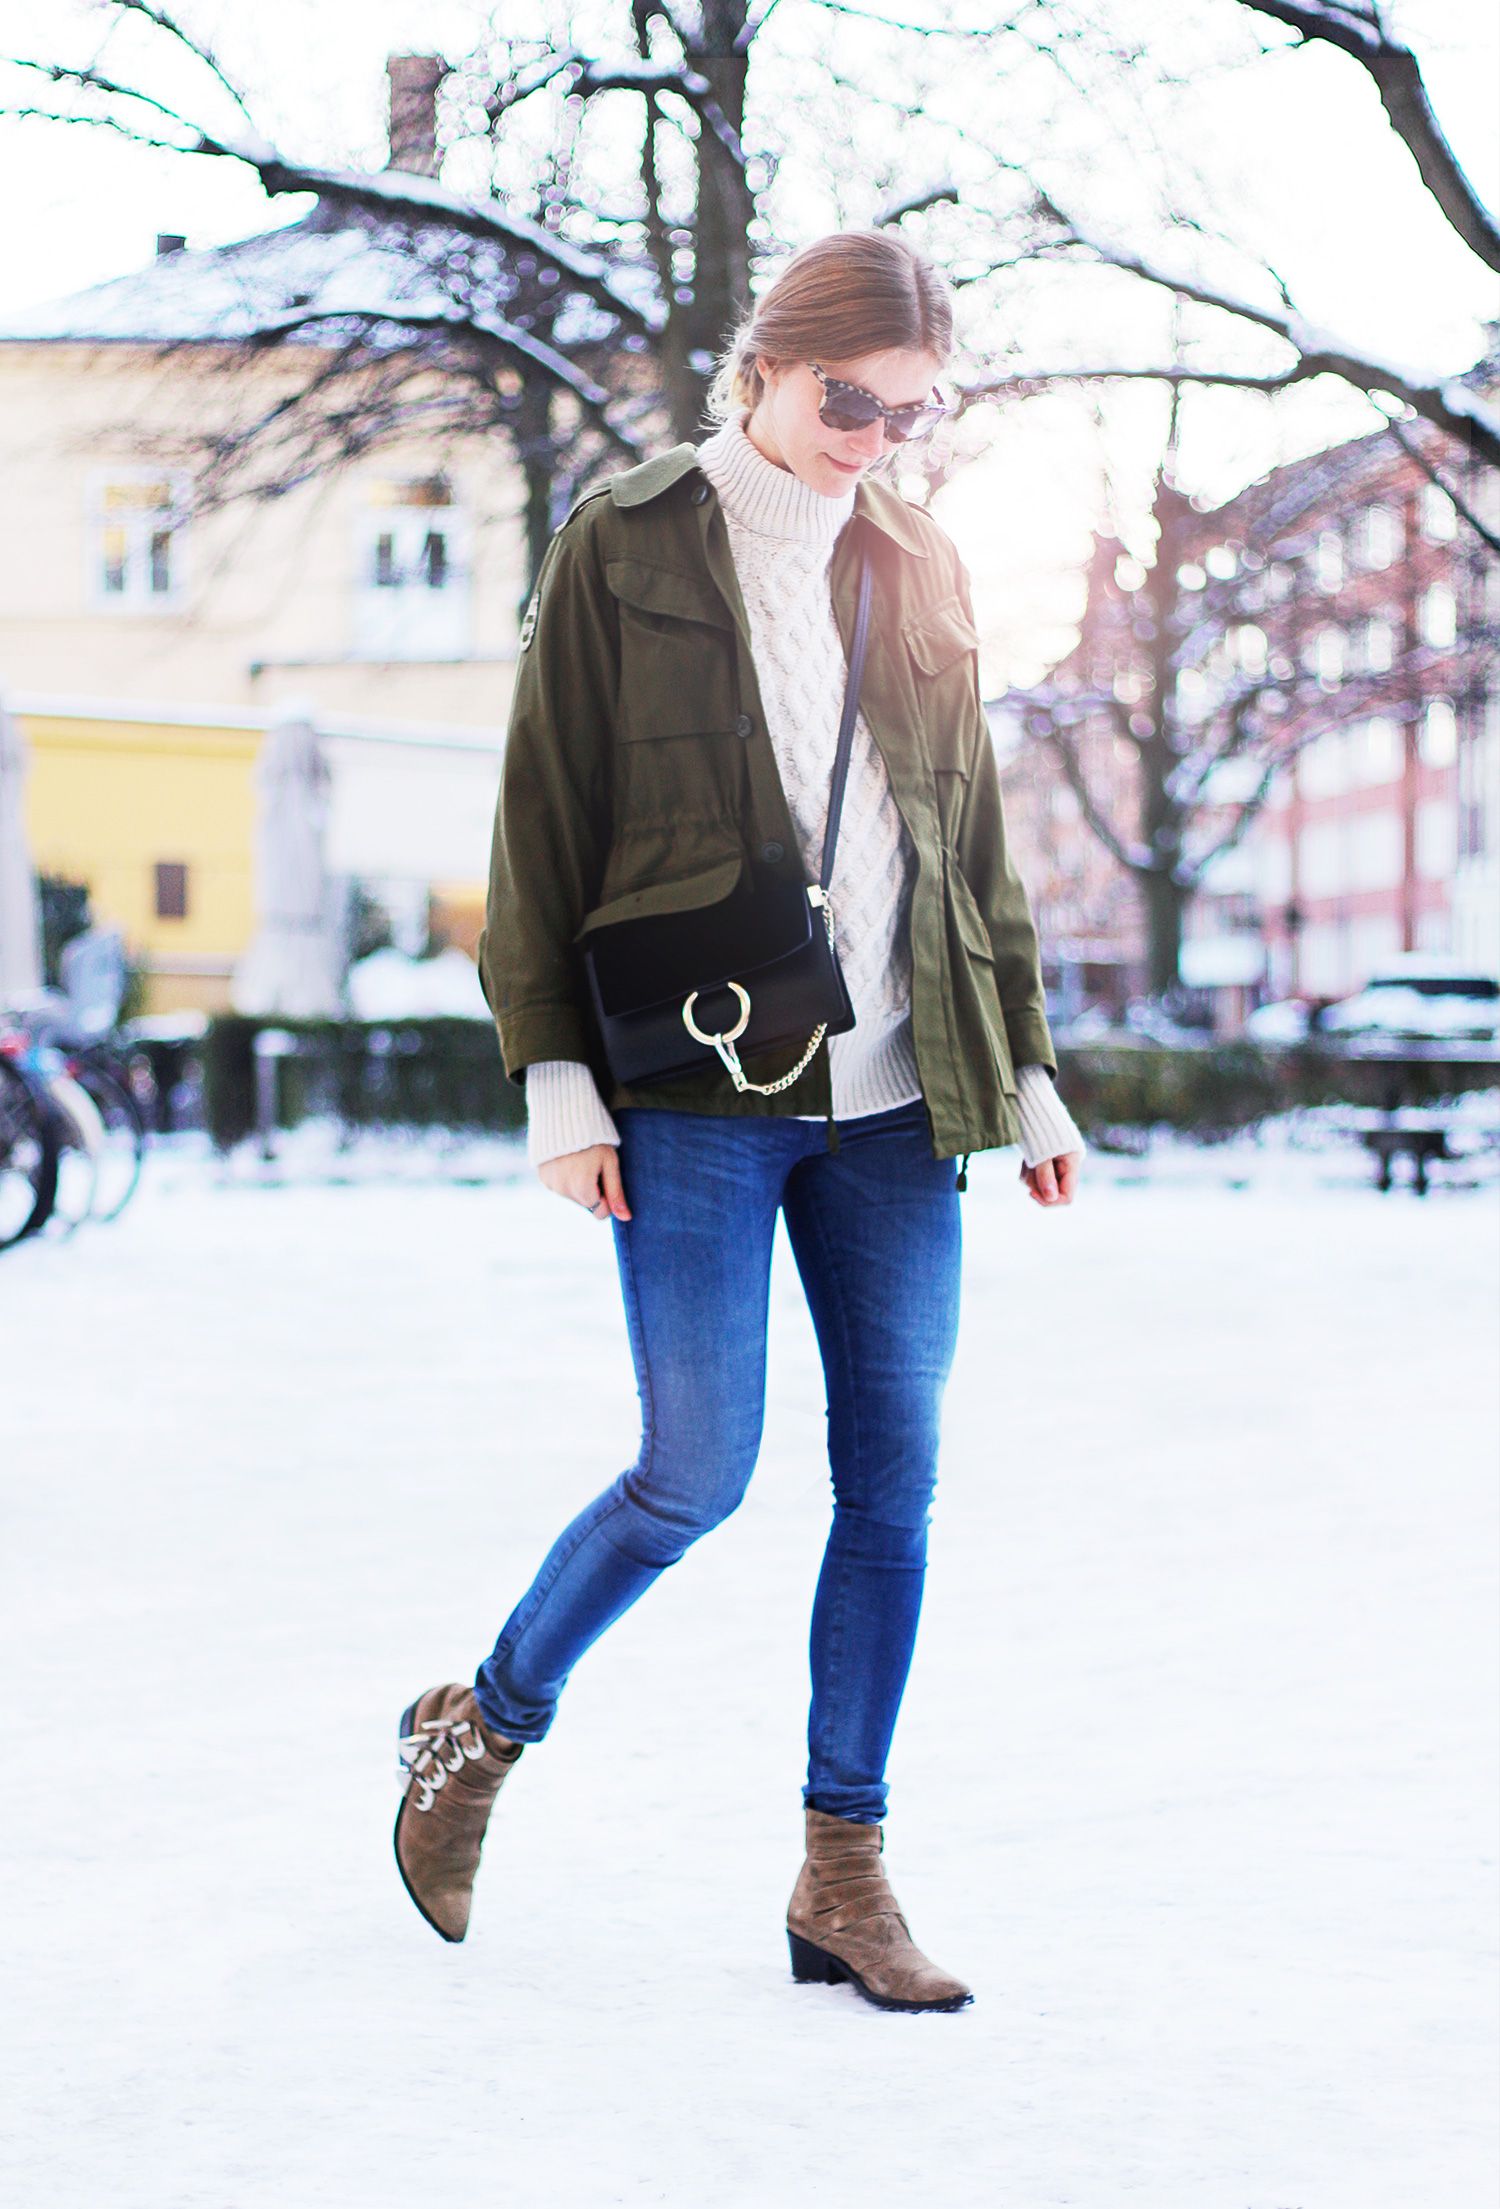 Утепляемся по-модному: с чем лучше носить джинсы-бойфренды зимой. с чем носить джинсы в зимнюю стужу что одеть под джинсы зимой